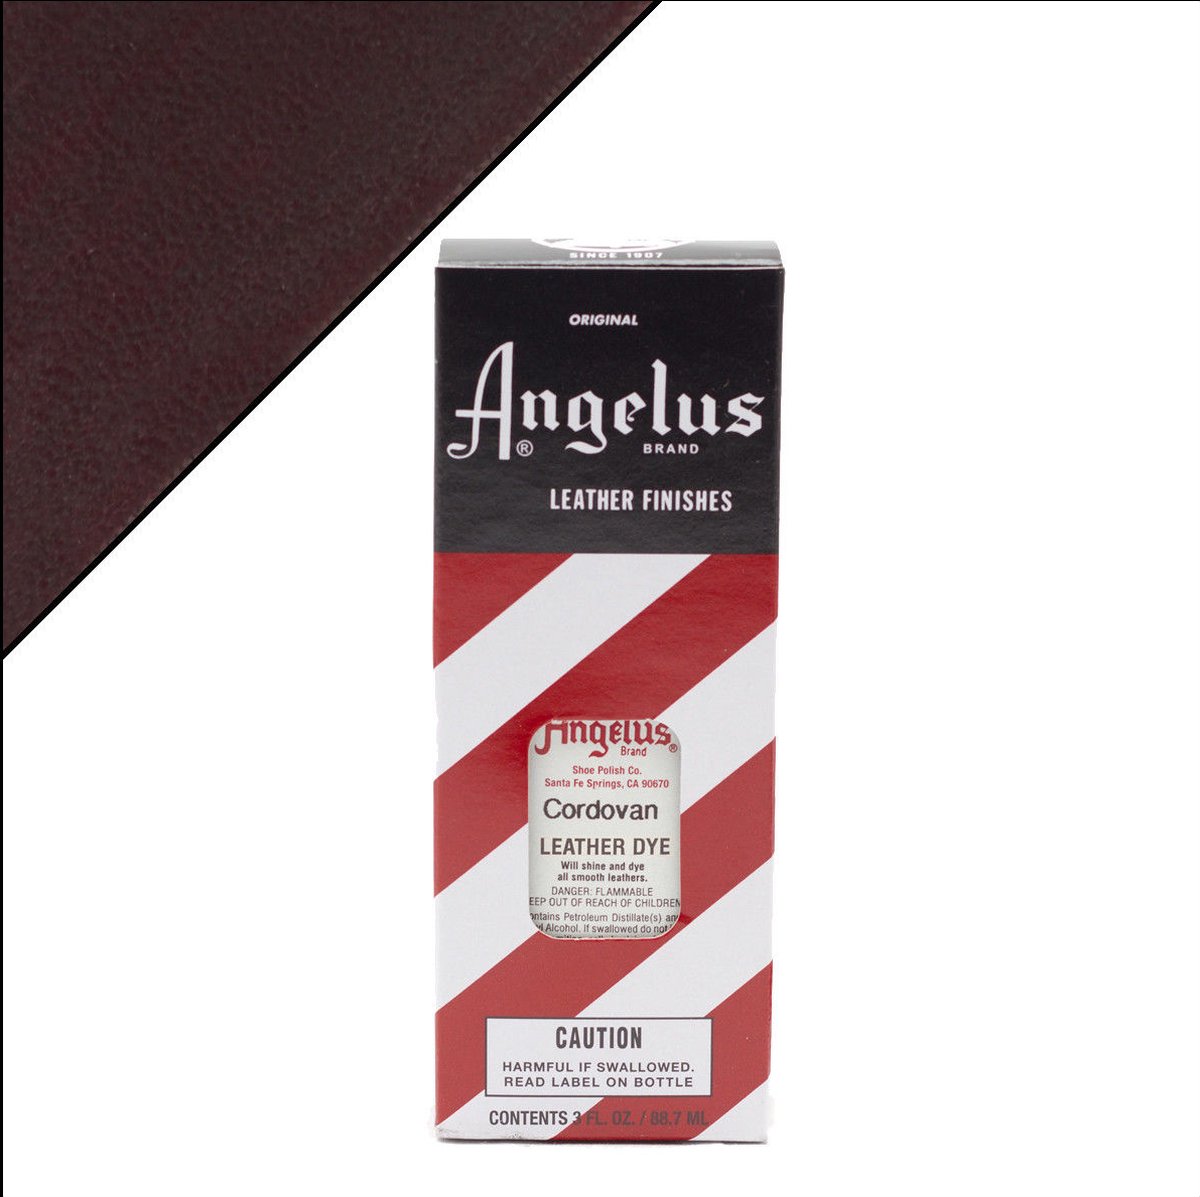 Angelus Leather Dye - Indringverf - voor leer - 90 ml - Cordovan bruin